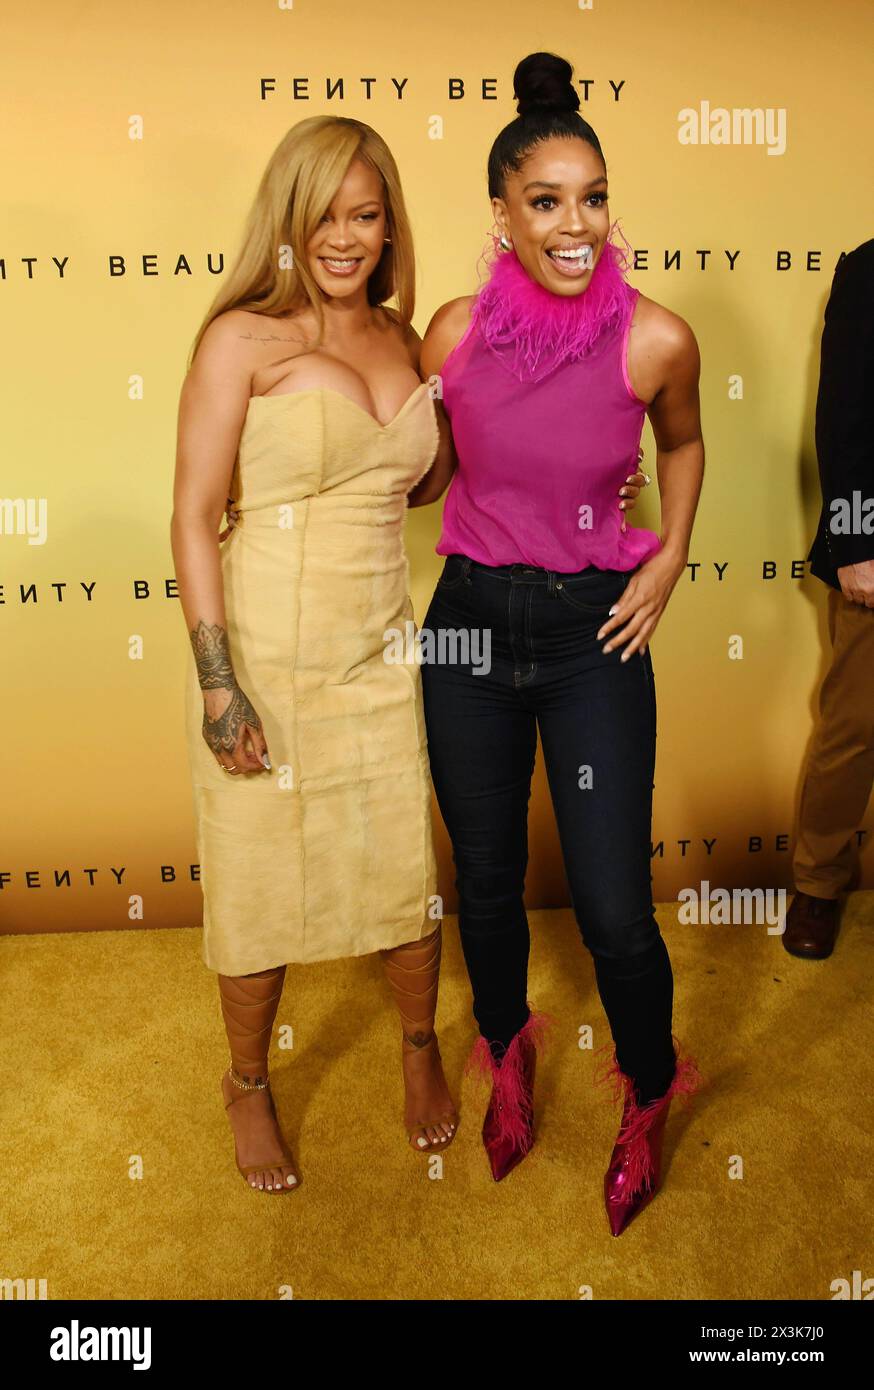 LOS ANGELES, CALIFORNIA - APRILE 26: (L-R) Rihanna e Francesca Amiker partecipano all'evento di bellezza immersiva di Rihanna in onore del nuovo profarmaco di Fenty Beauty Foto Stock